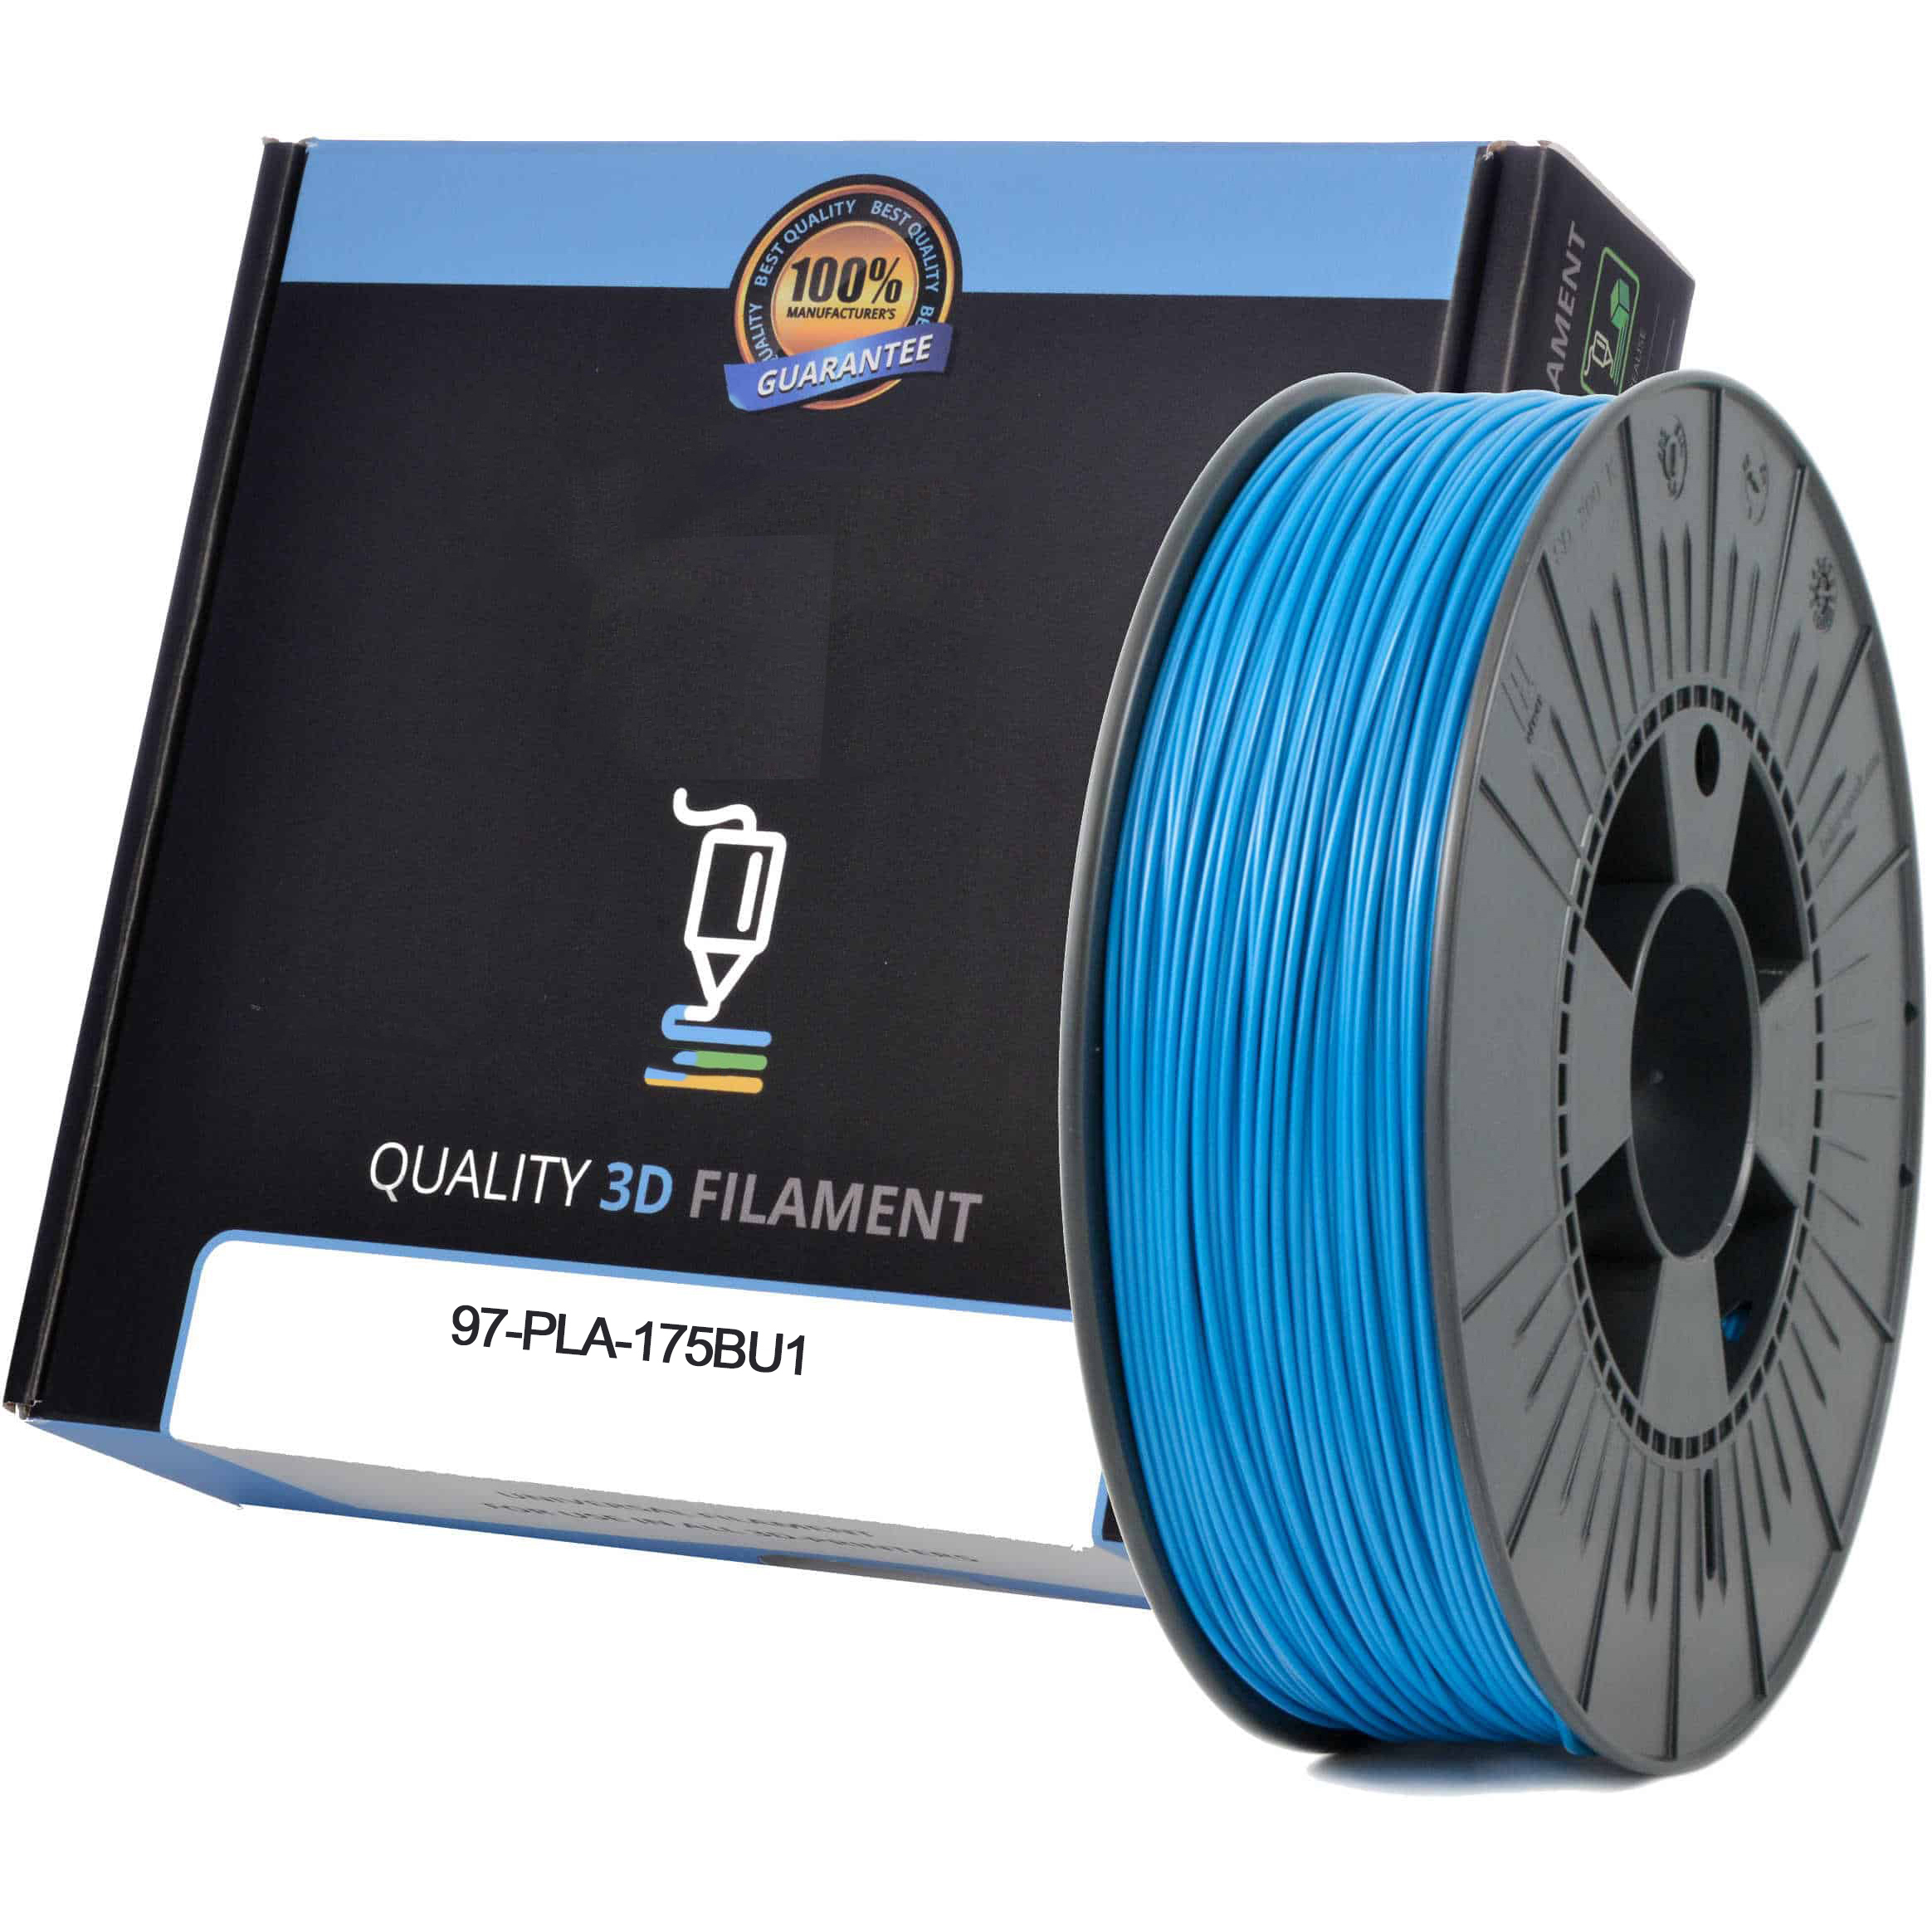 Premium Compatible PLA 1.75mm Sky Blue 1kg 3D Filament (97-PLA-175BU1)